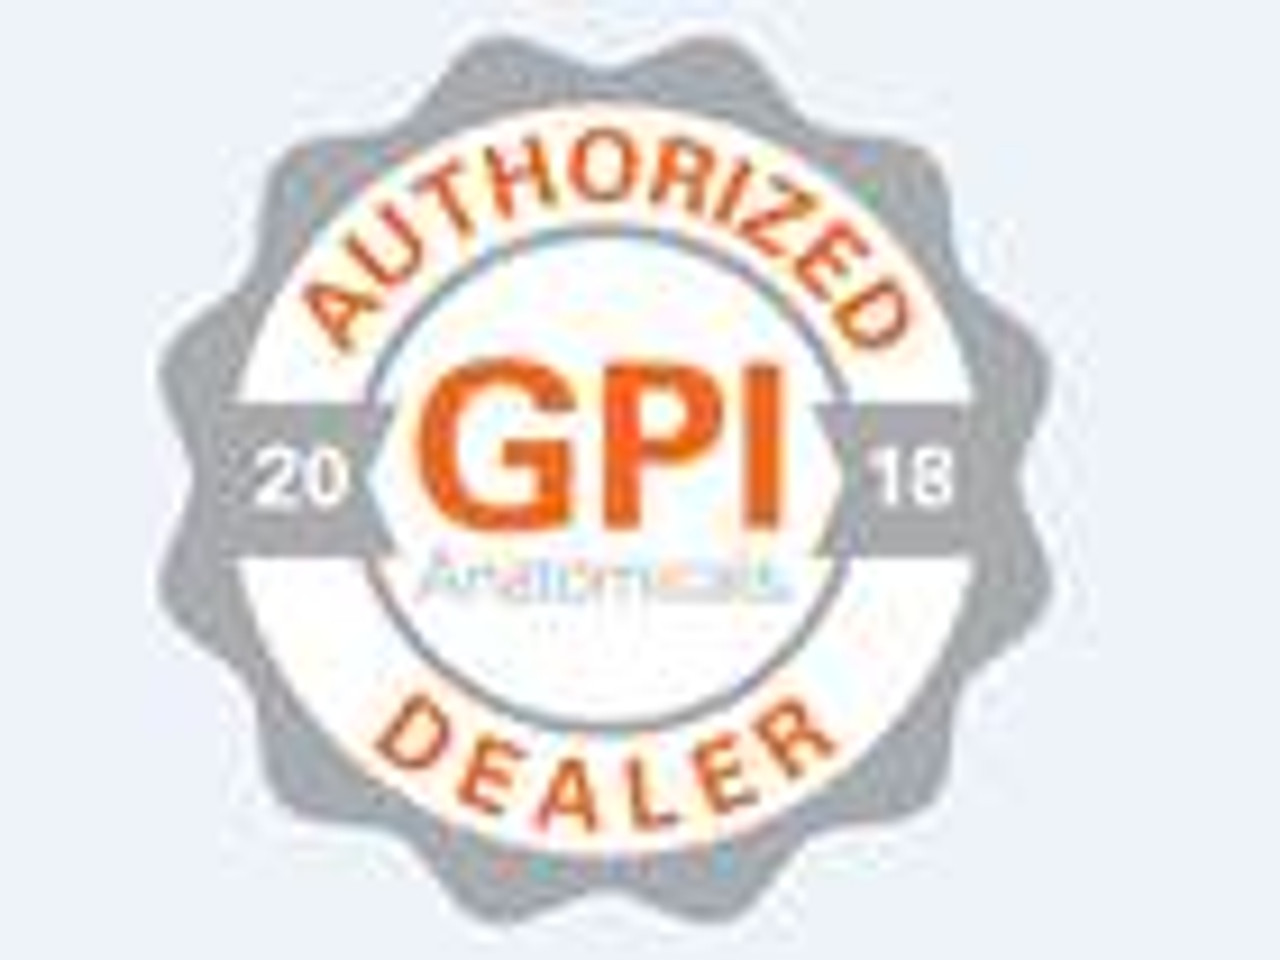  Authorized GPI dealer